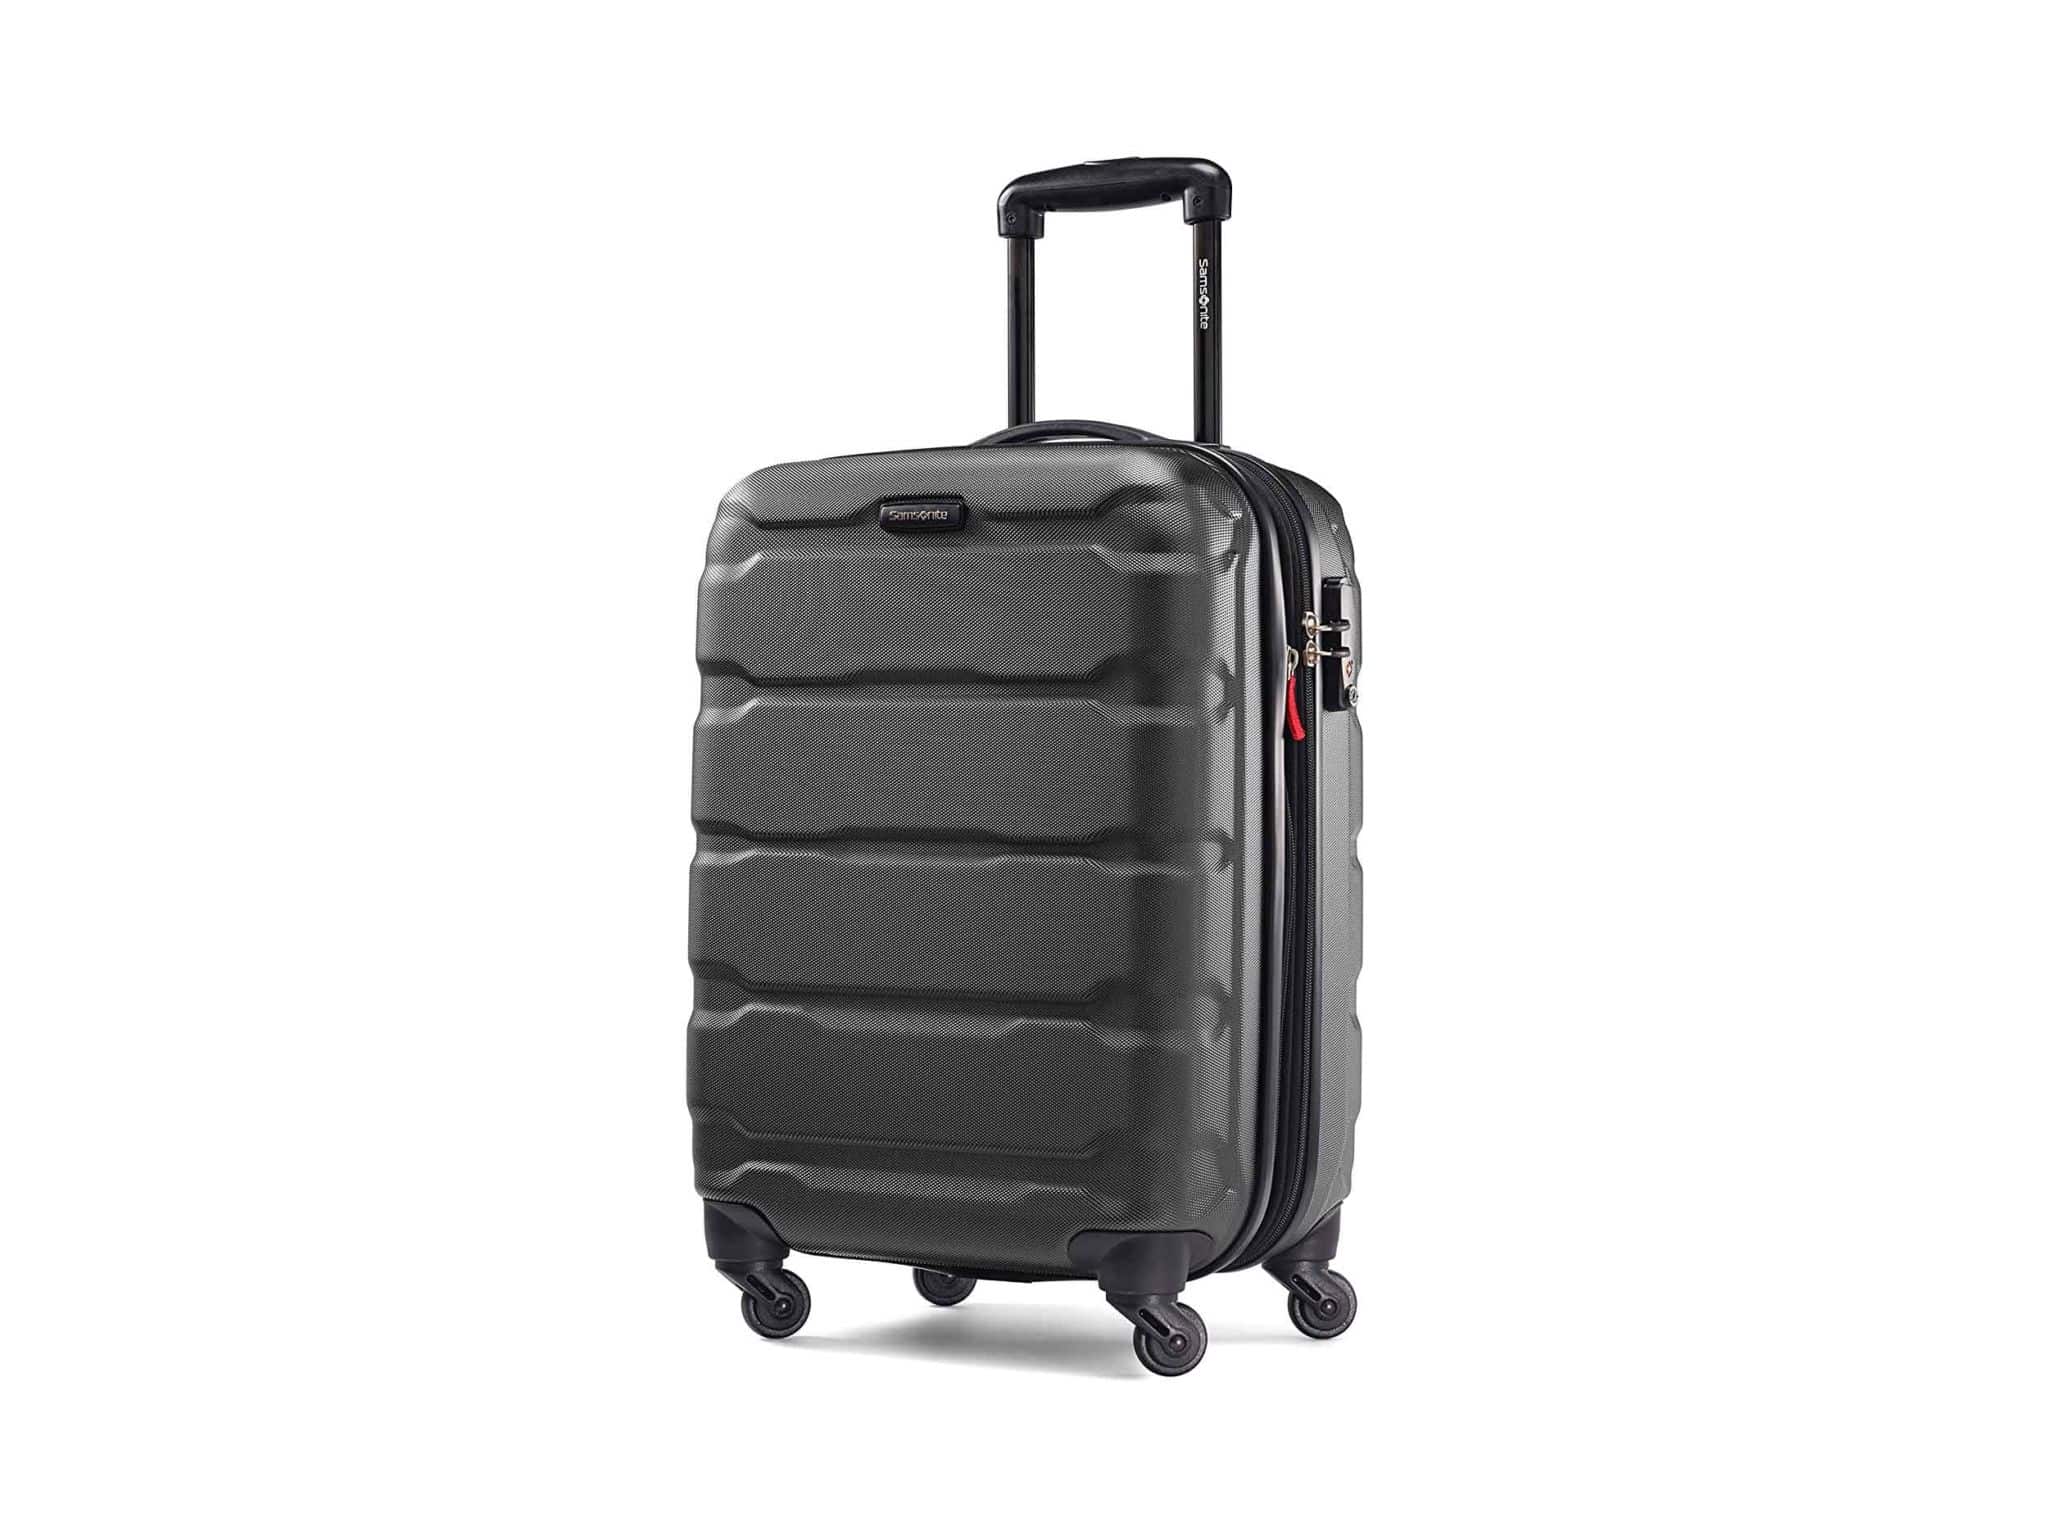 Samsonite Omni PC Hardside Expandable Luggage